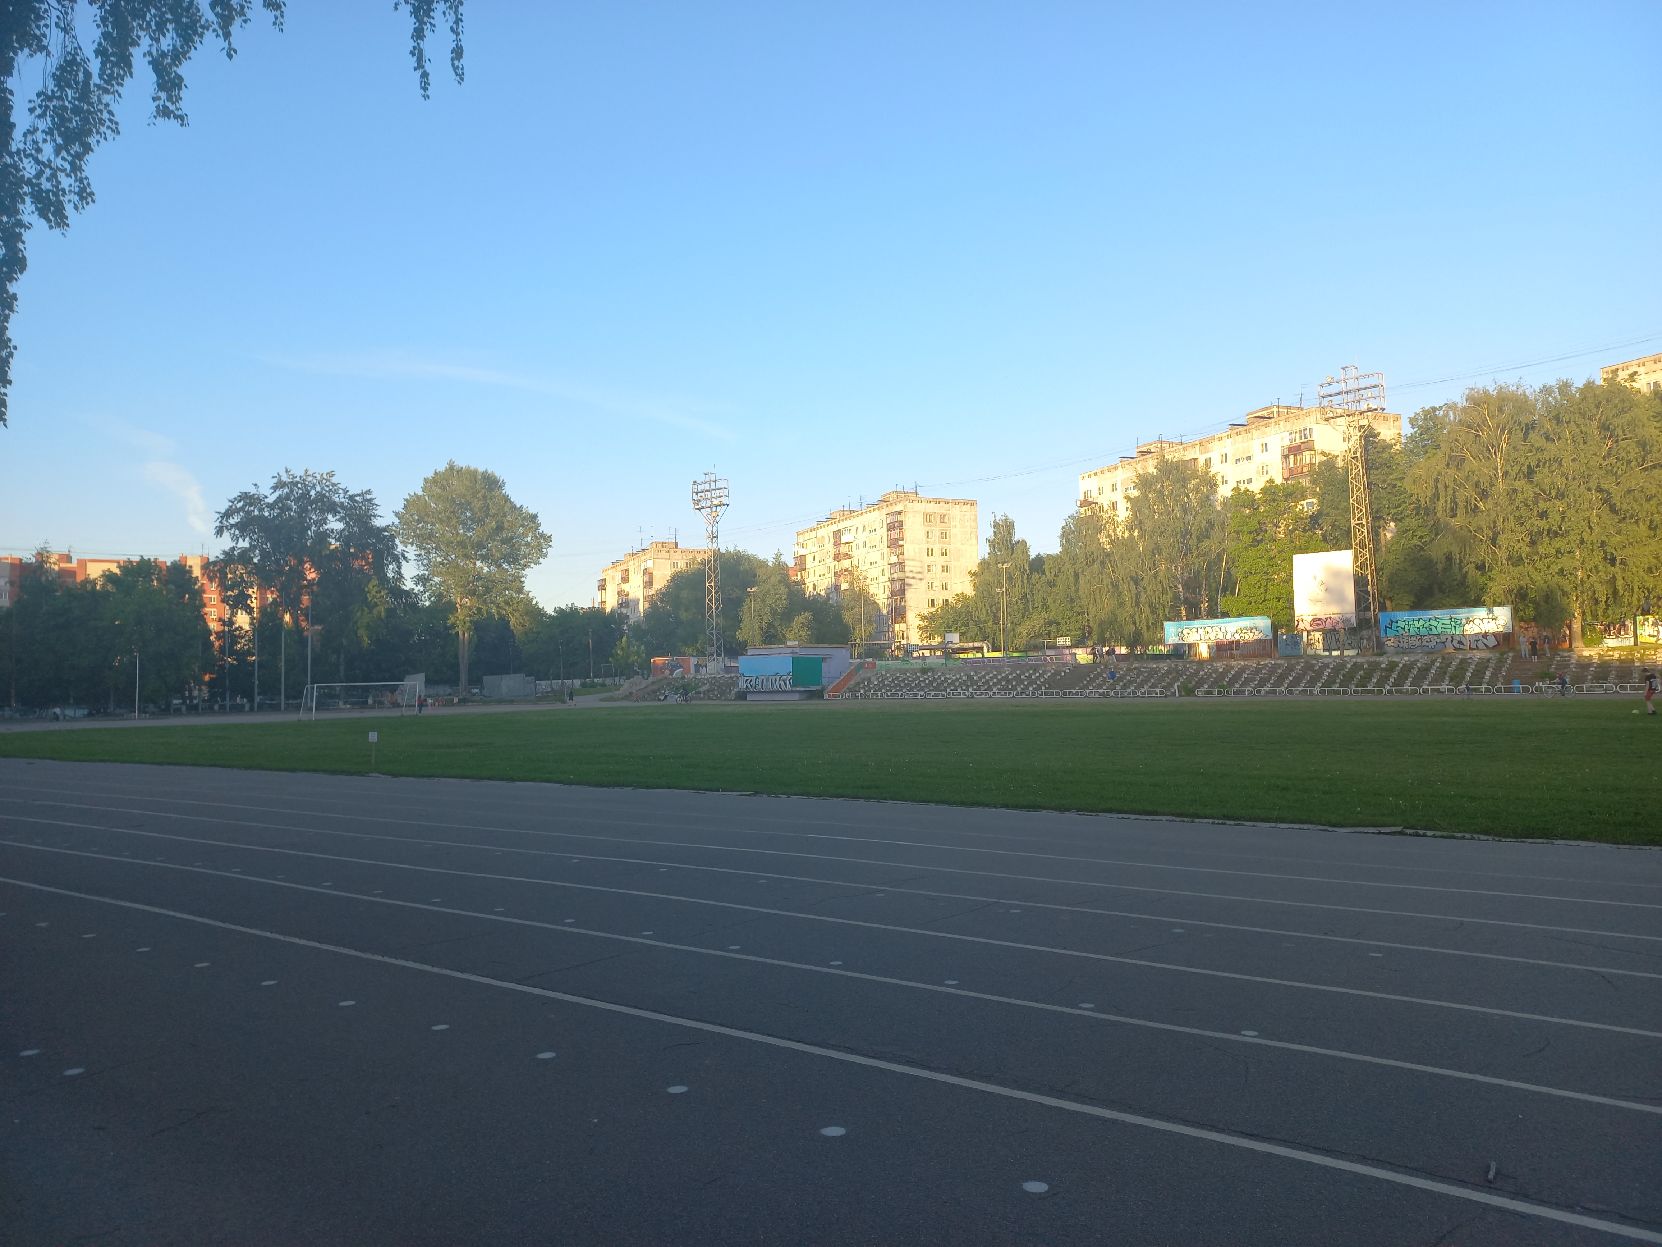 Новый ФОК с футбольным полем построят на Бору за 500 млн рублей  - фото 1